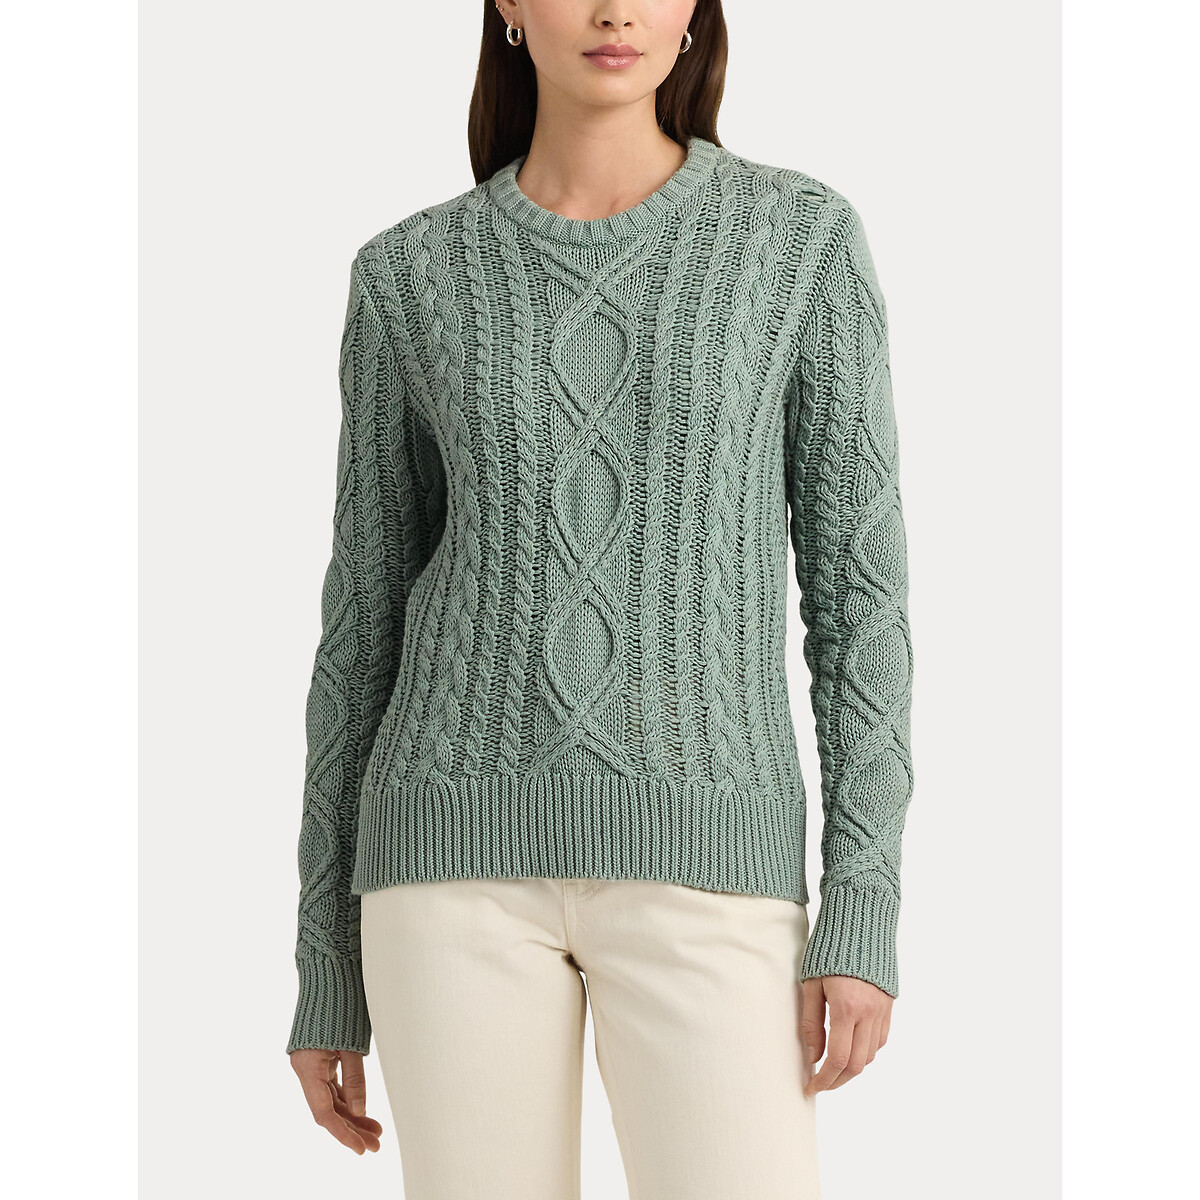 Пуловер с витым узором и круглым вырезом из хлопкового трикотажа HILVAITE XL зеленый пуловер с витым узором и круглым вырезом xs черный